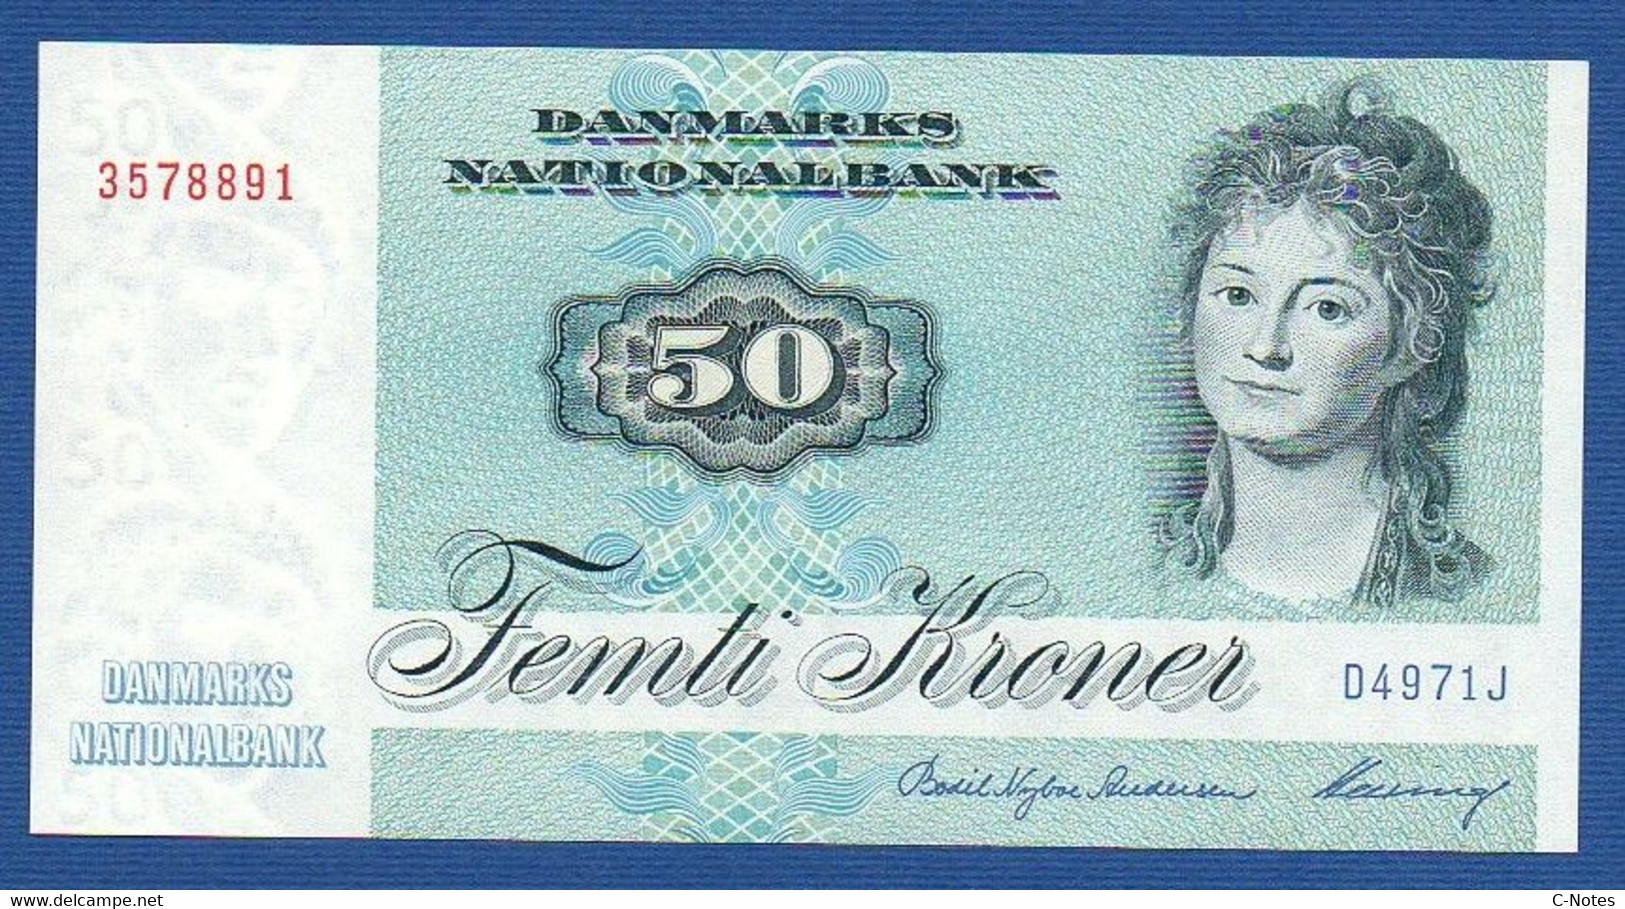 DENMARK - P.50n – 50 Kroner 1997 UNC Serie D4971J 3578891 - Danemark